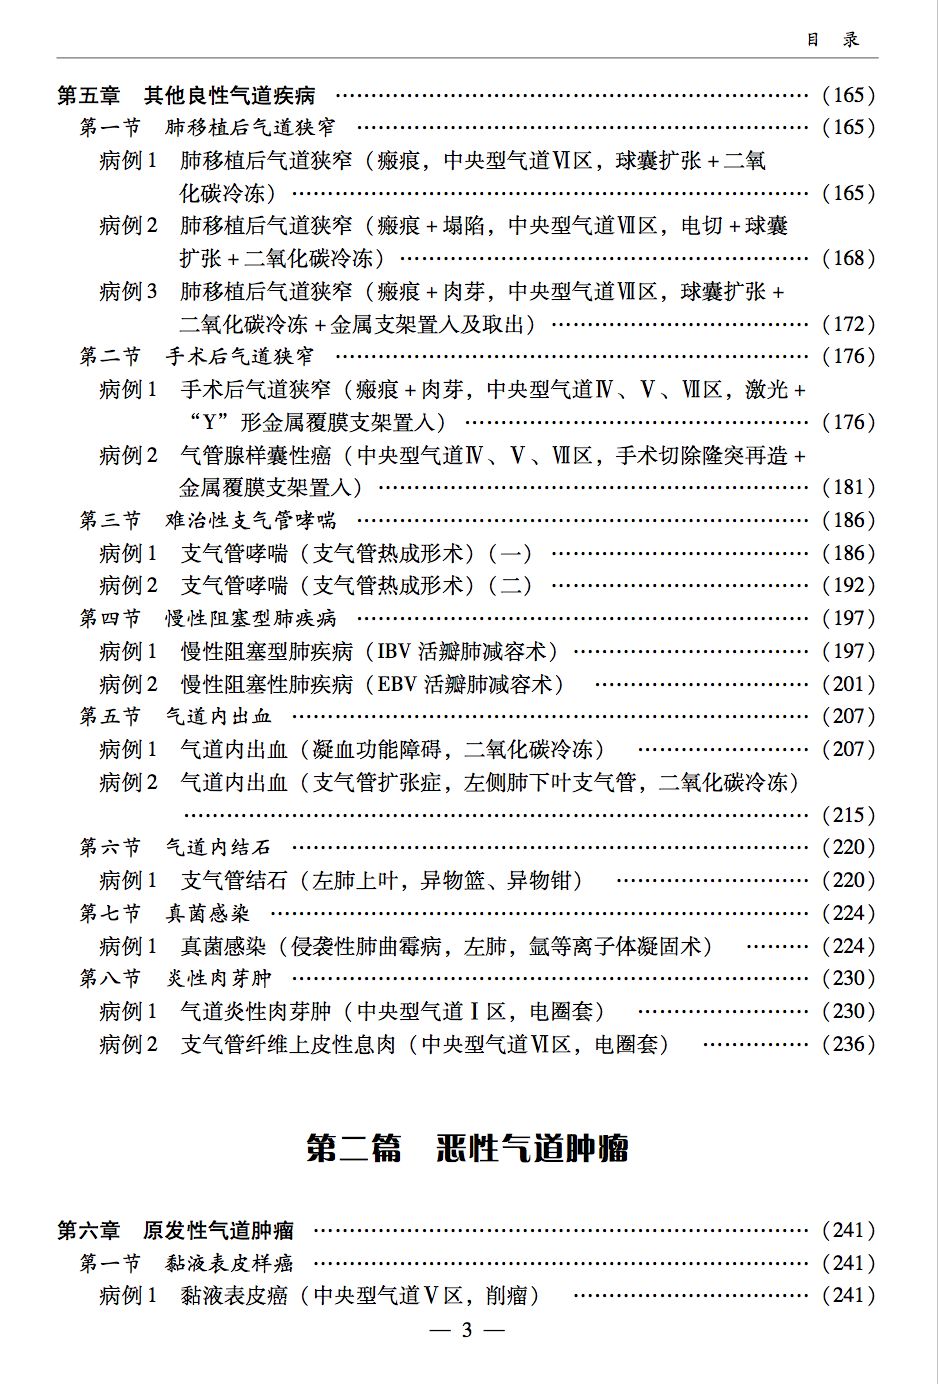 新书发售丨中国呼吸内镜介入治疗典型病例集锦,教你快速提升气管镜